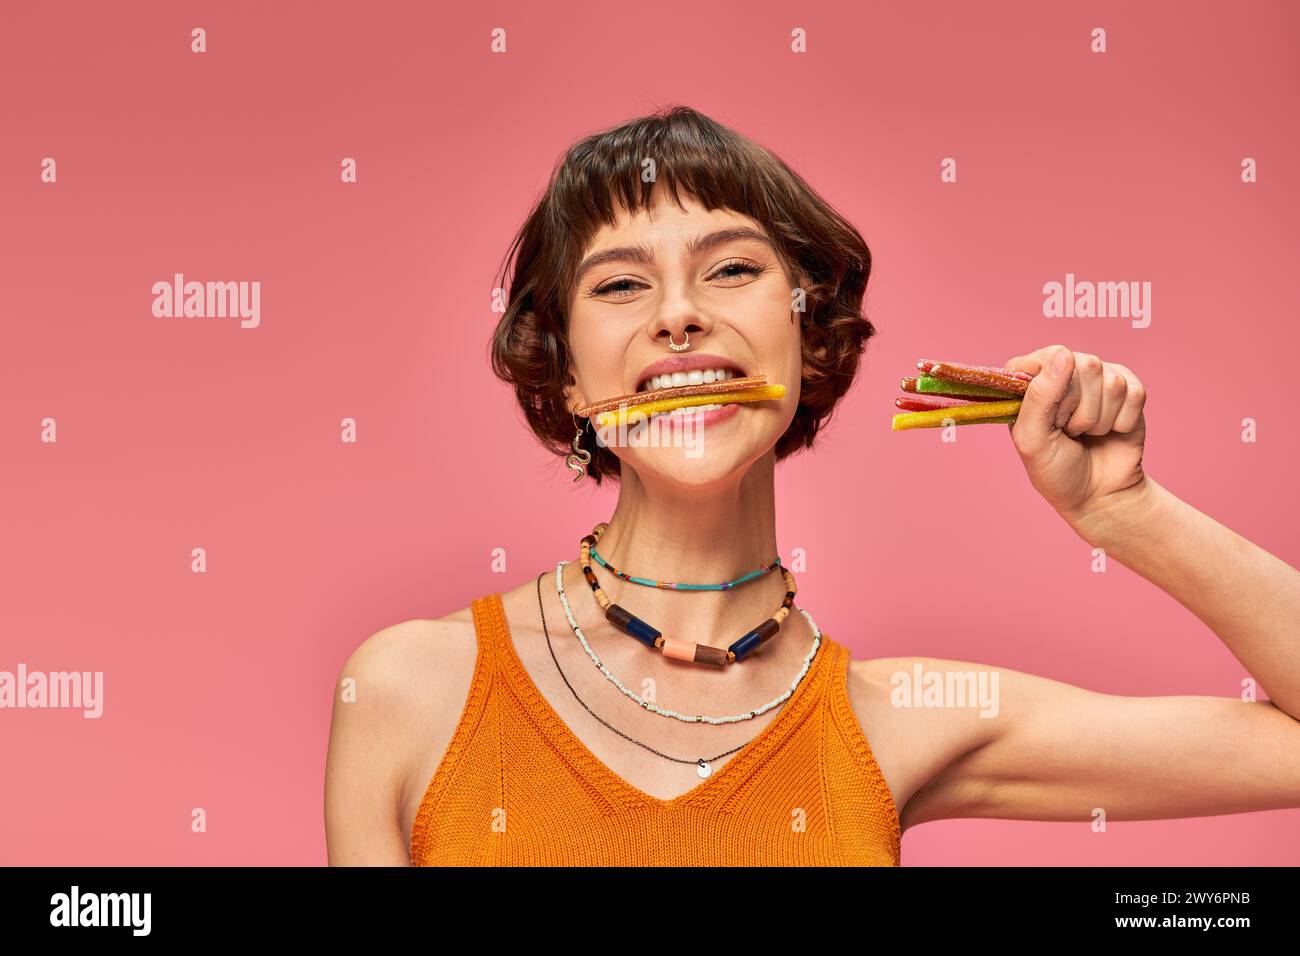 Glückliche junge Frau in ihren 20ern mit süßen und sauren Süßigkeiten in Händen und Zähnen auf rosa Hintergrund Stockfoto